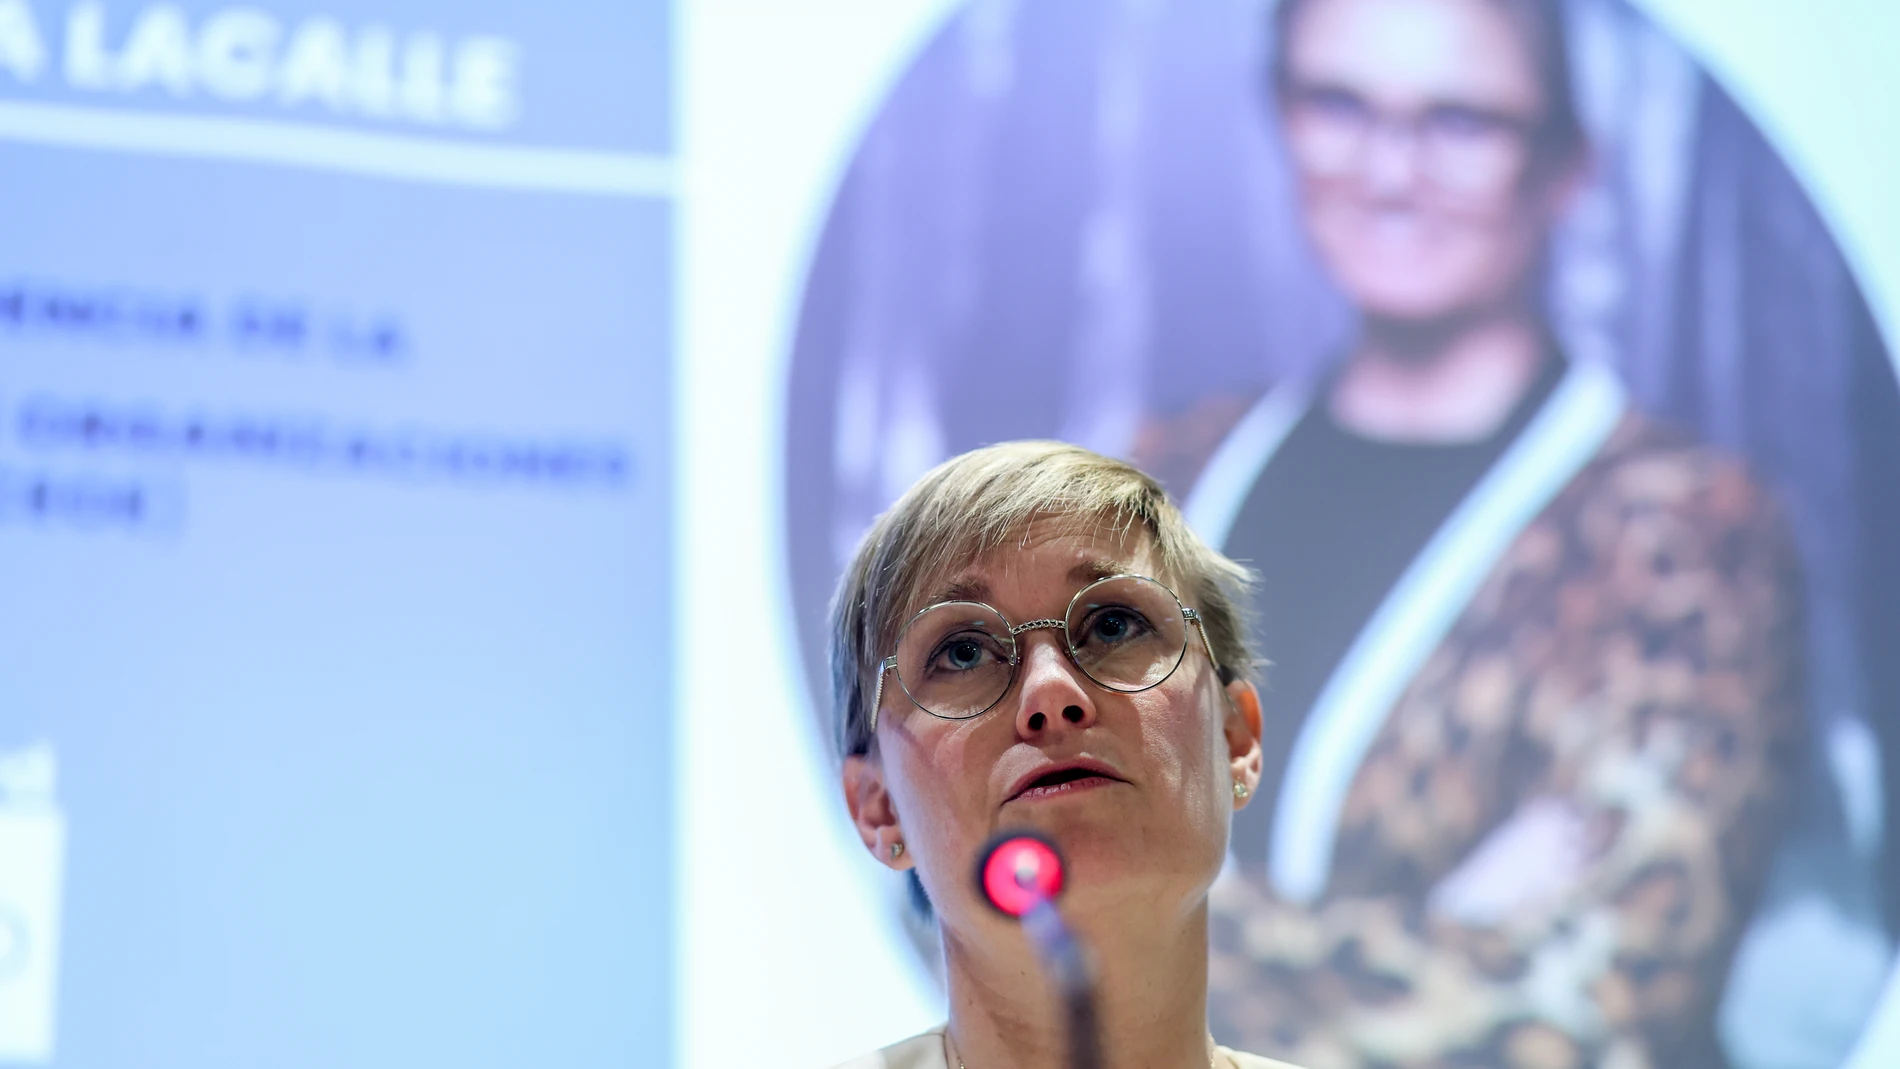 La CEO de Iberboard y vicepresidenta de la patronal catalana Foment del Treball, Virginia Guinda, interviene durante la presentación de su candidatura a la presidencia de la CEOE